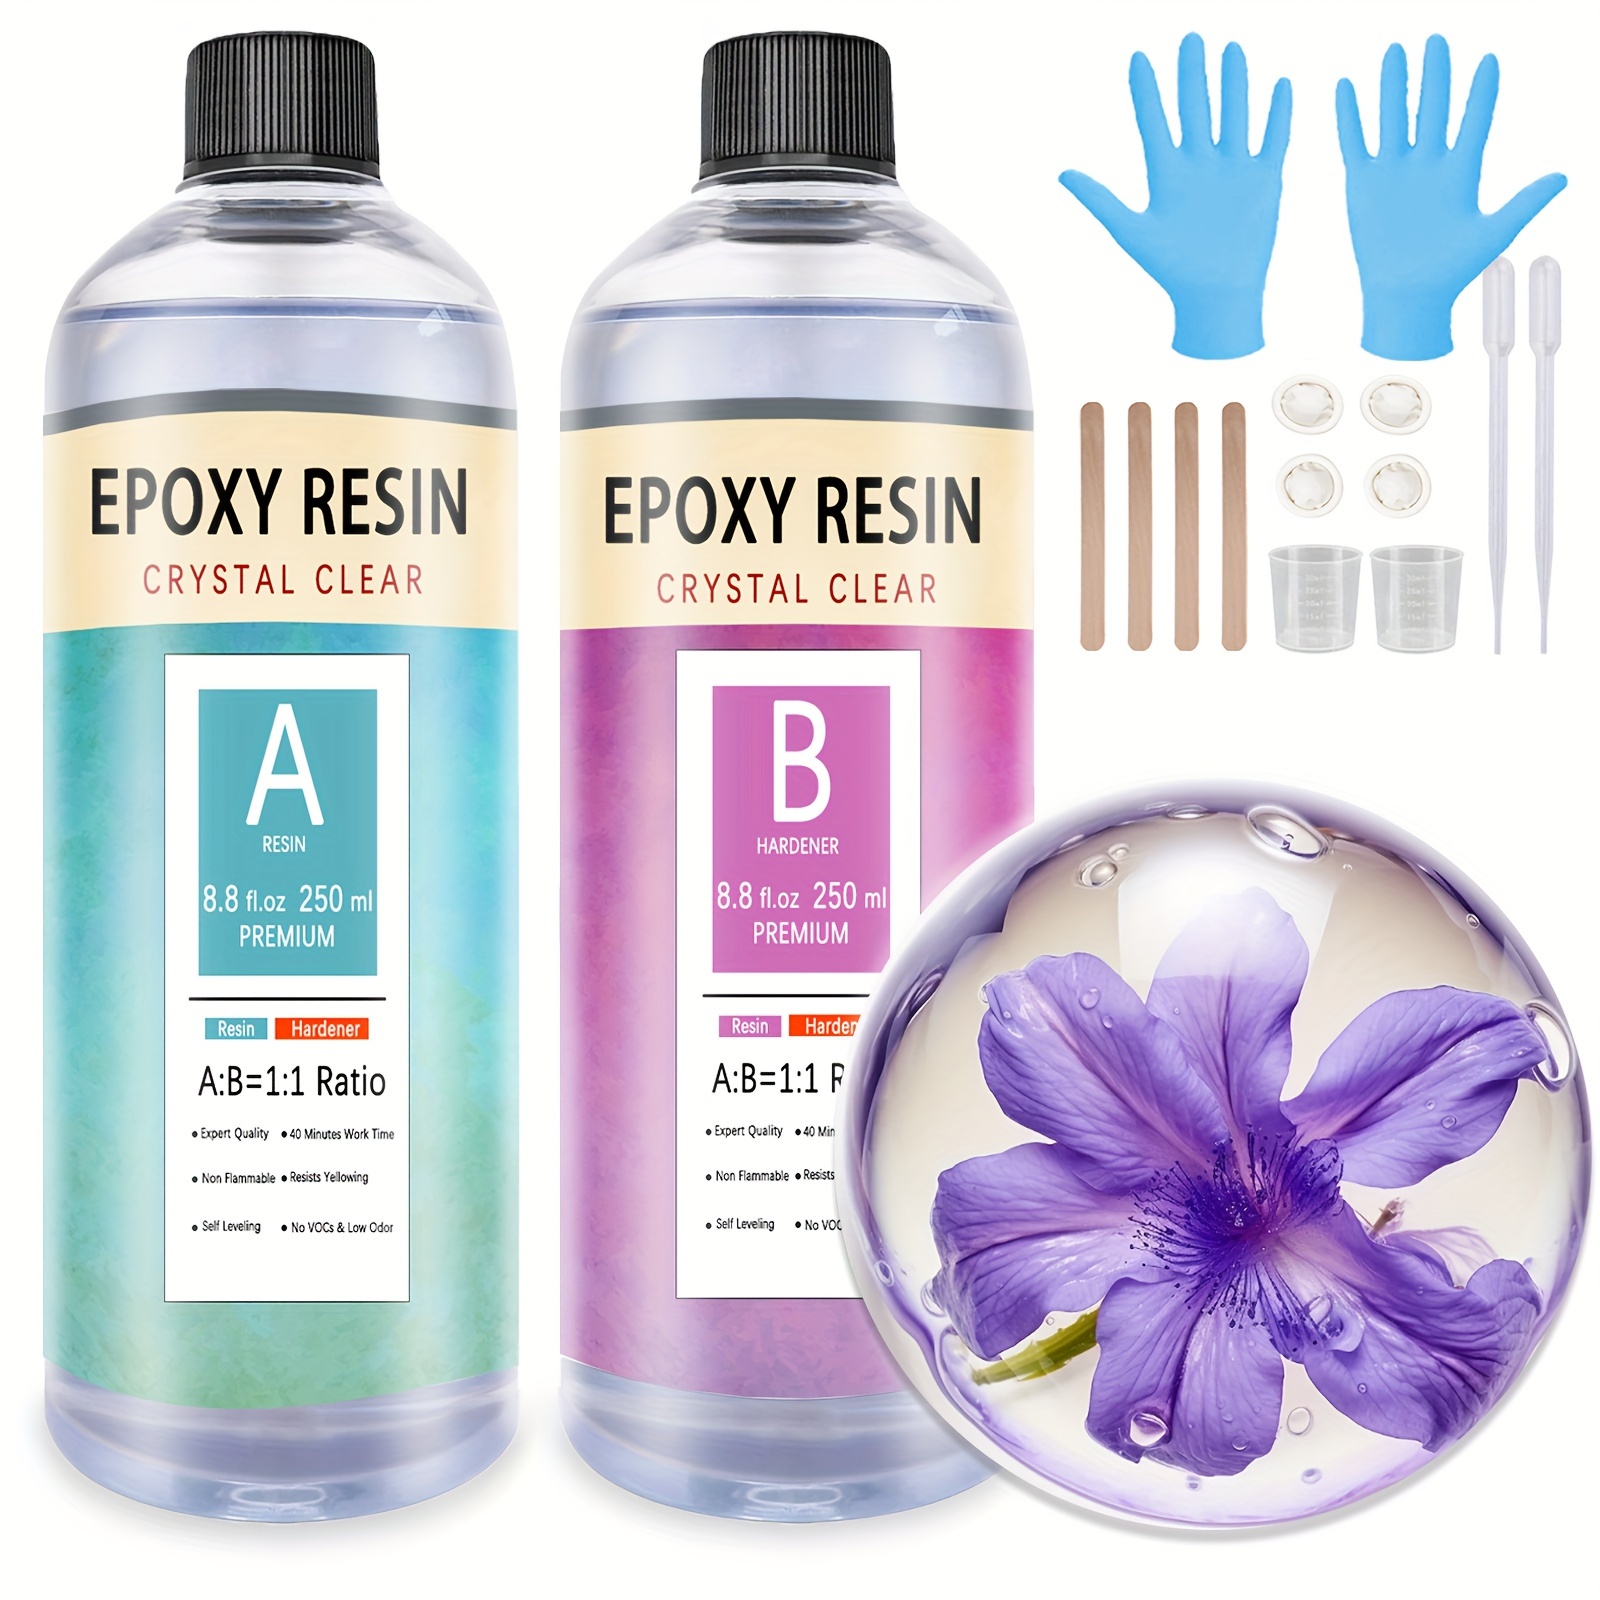 Diy Epoxy Crystal Clear Resin Kit Hardener Resin Casting Kit - Temu